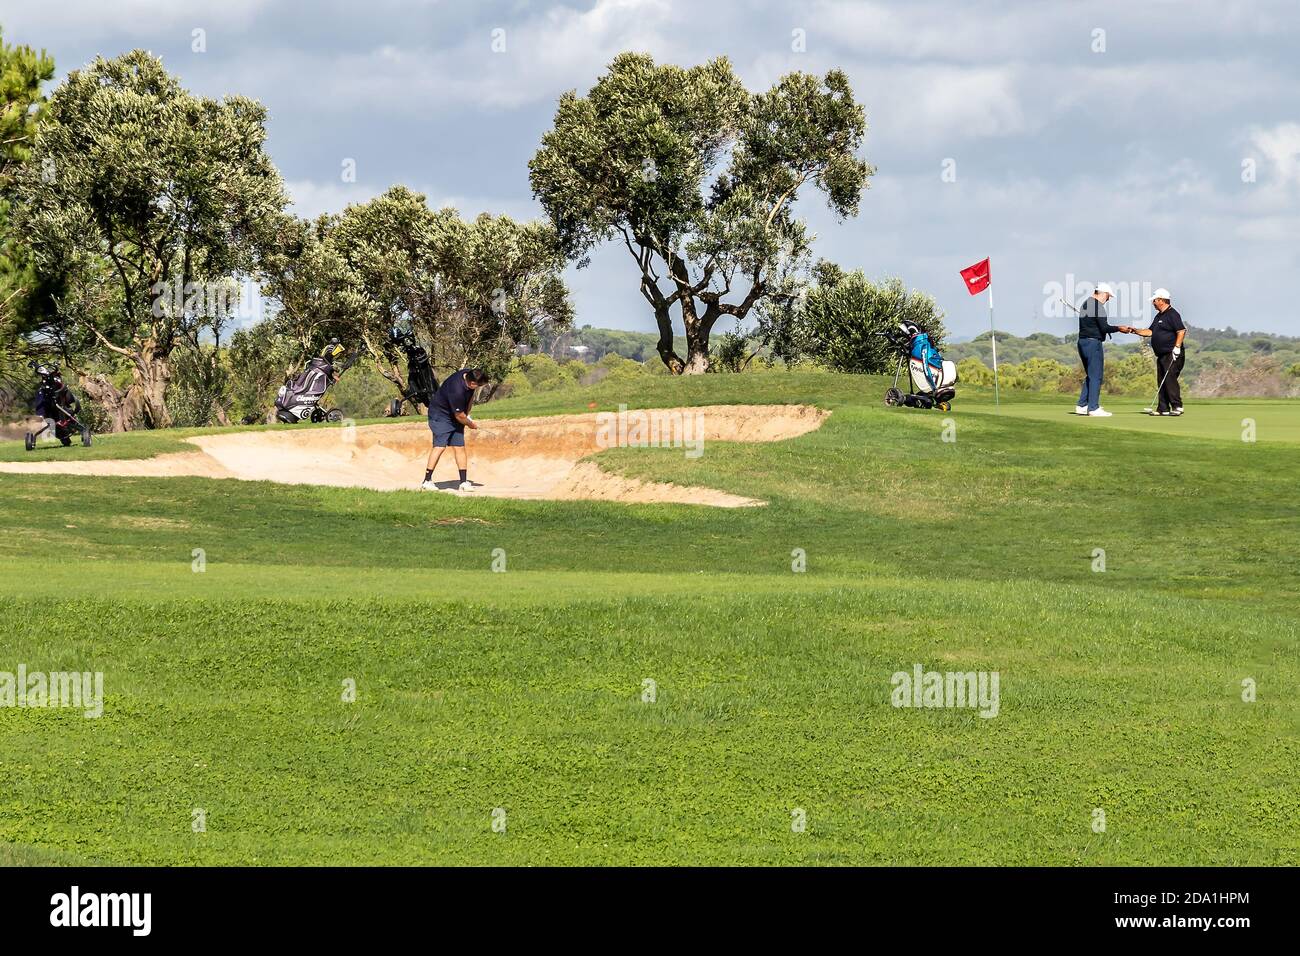 Huelva, Spagna - 8 novembre 2020: Tre uomini maturi giocano a golf nel villaggio di el Ropido, Huelva, Andalusia, Spagna Foto Stock